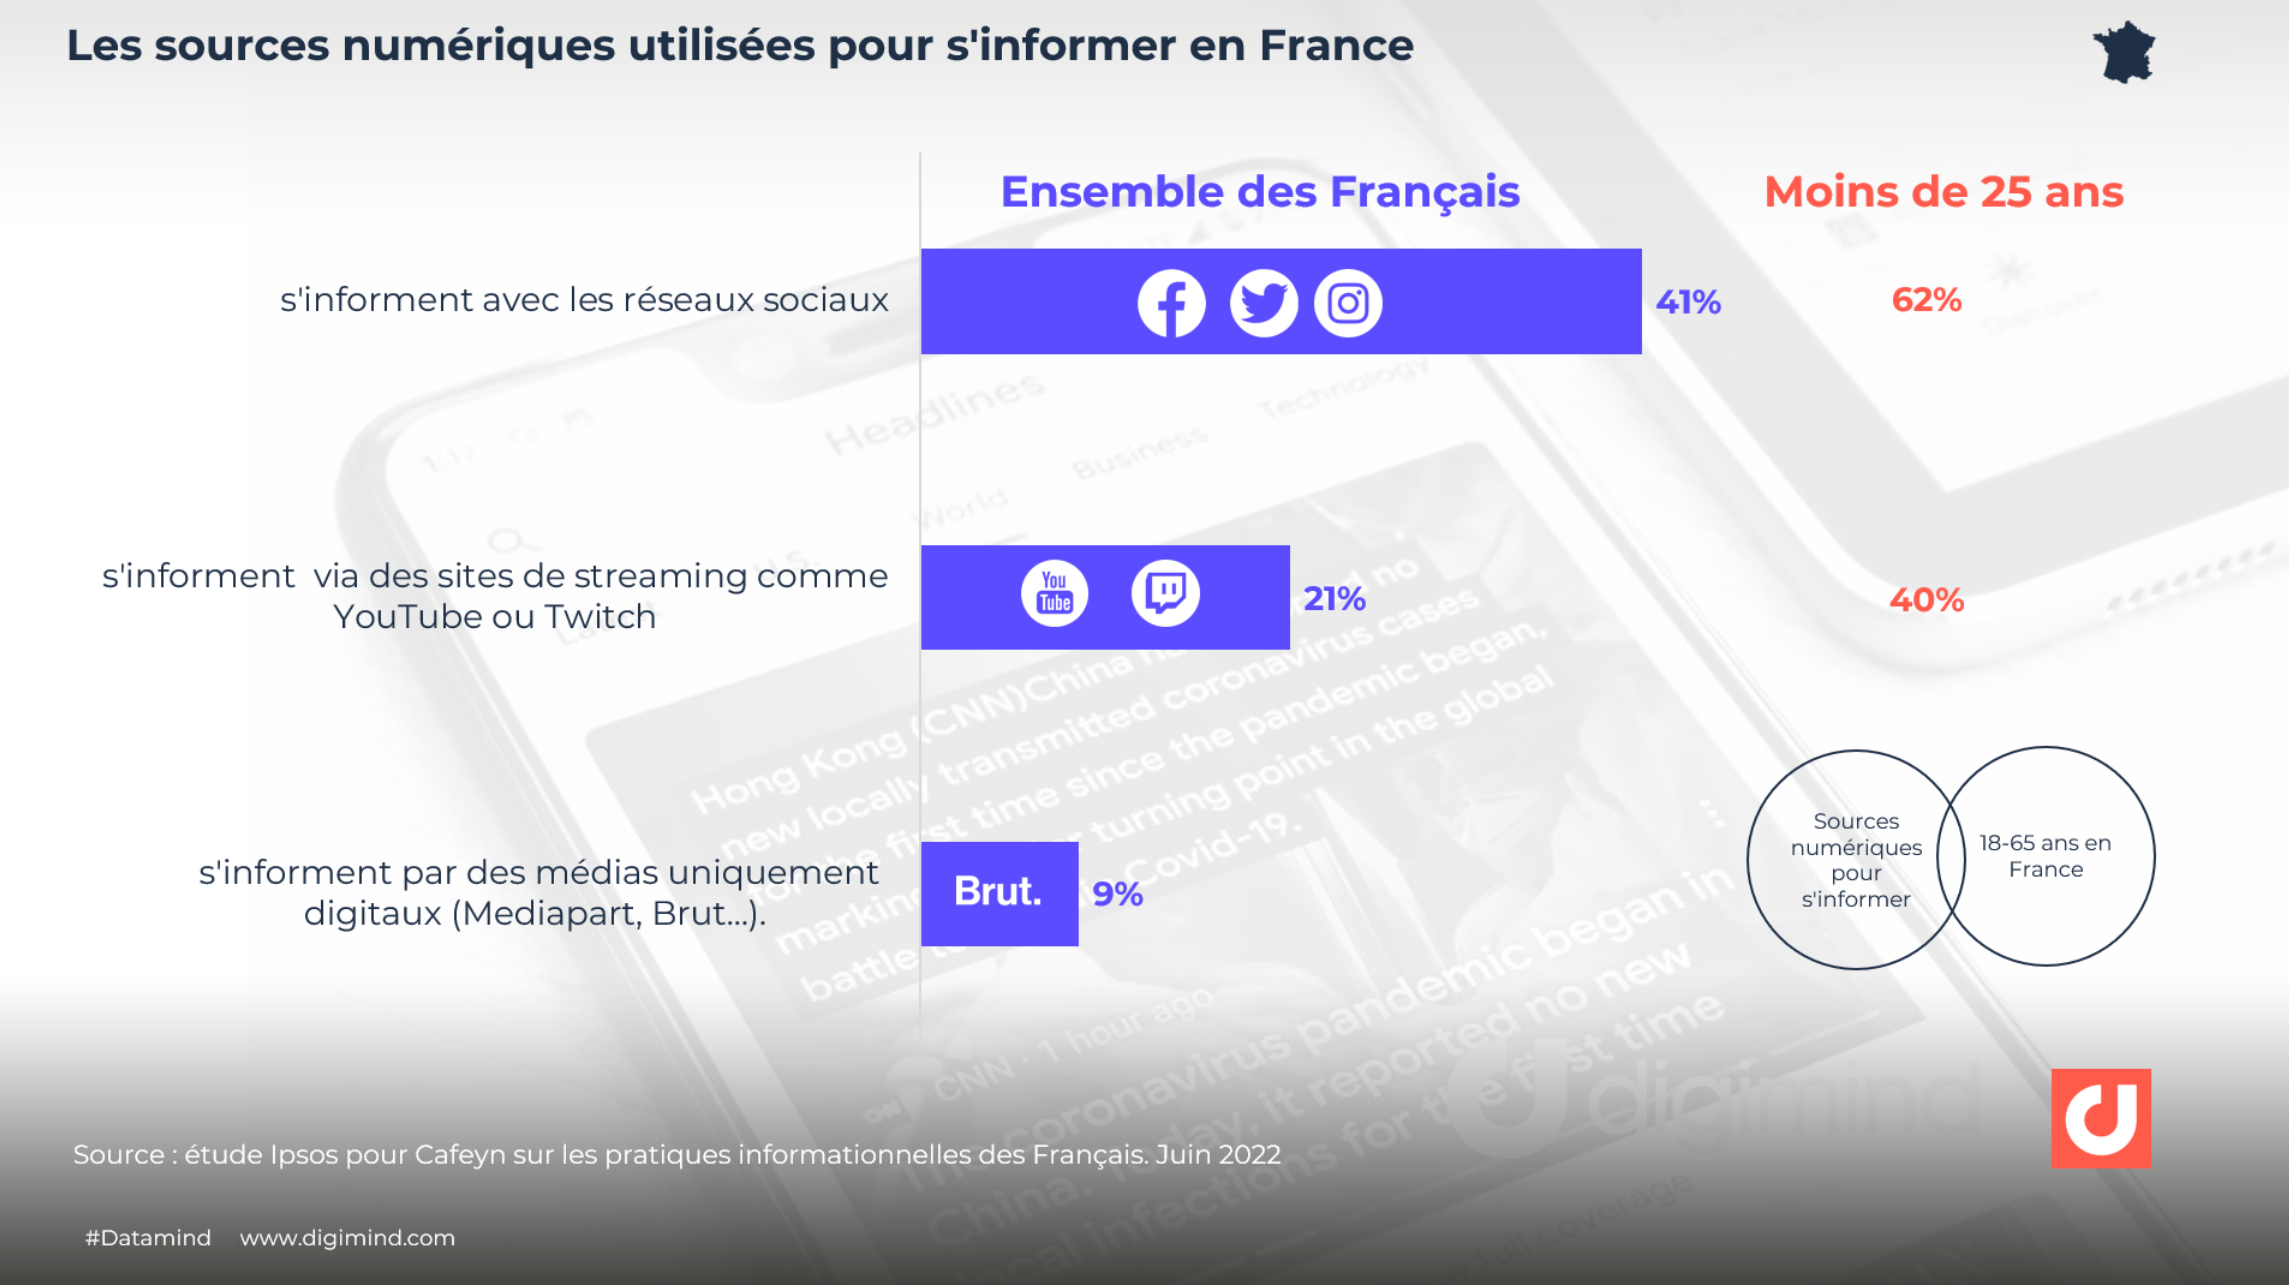 Les sources numériques utilisées pour s'informer en France - étude Ipsos pour Cafeyn 